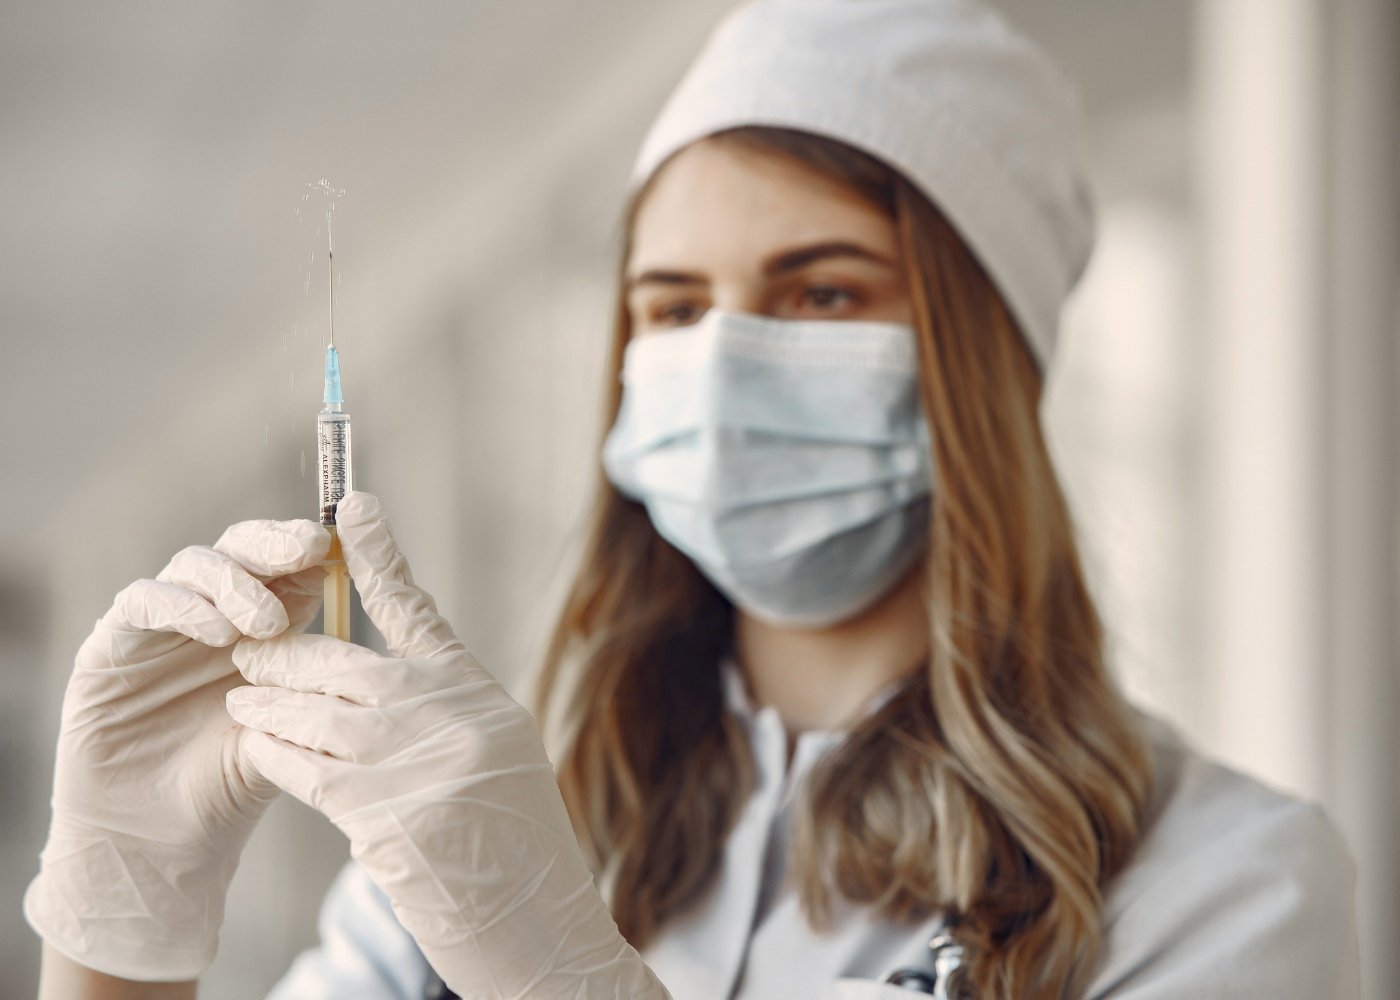 

В Ижевске с 1 сентября откроют дополнительный кабинет вакцинации от коронавируса

